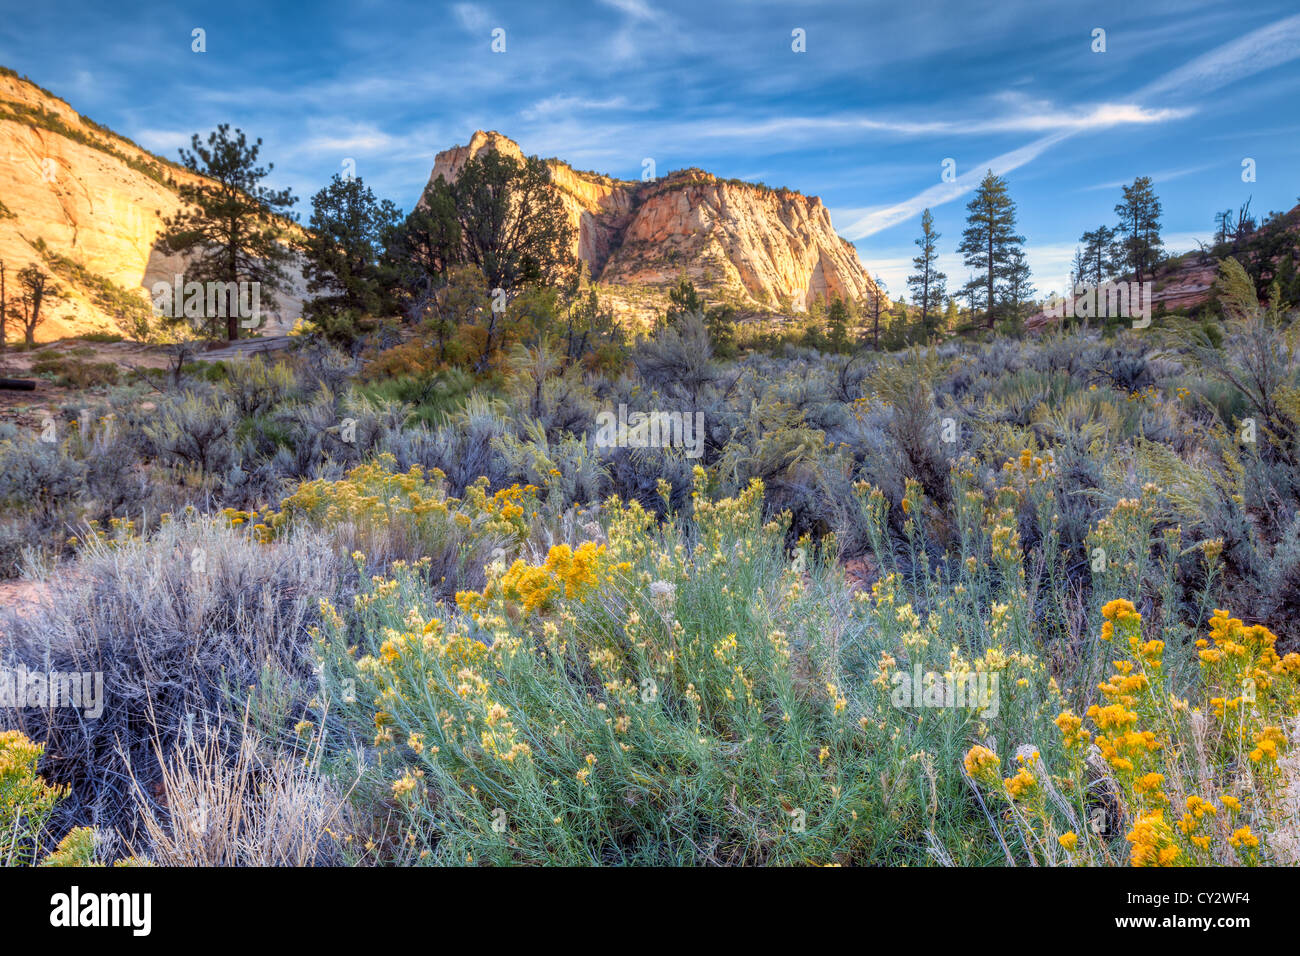 Zion National Park est situé dans le sud-ouest des États-Unis, près de Springdale, en Utah rock formations Banque D'Images